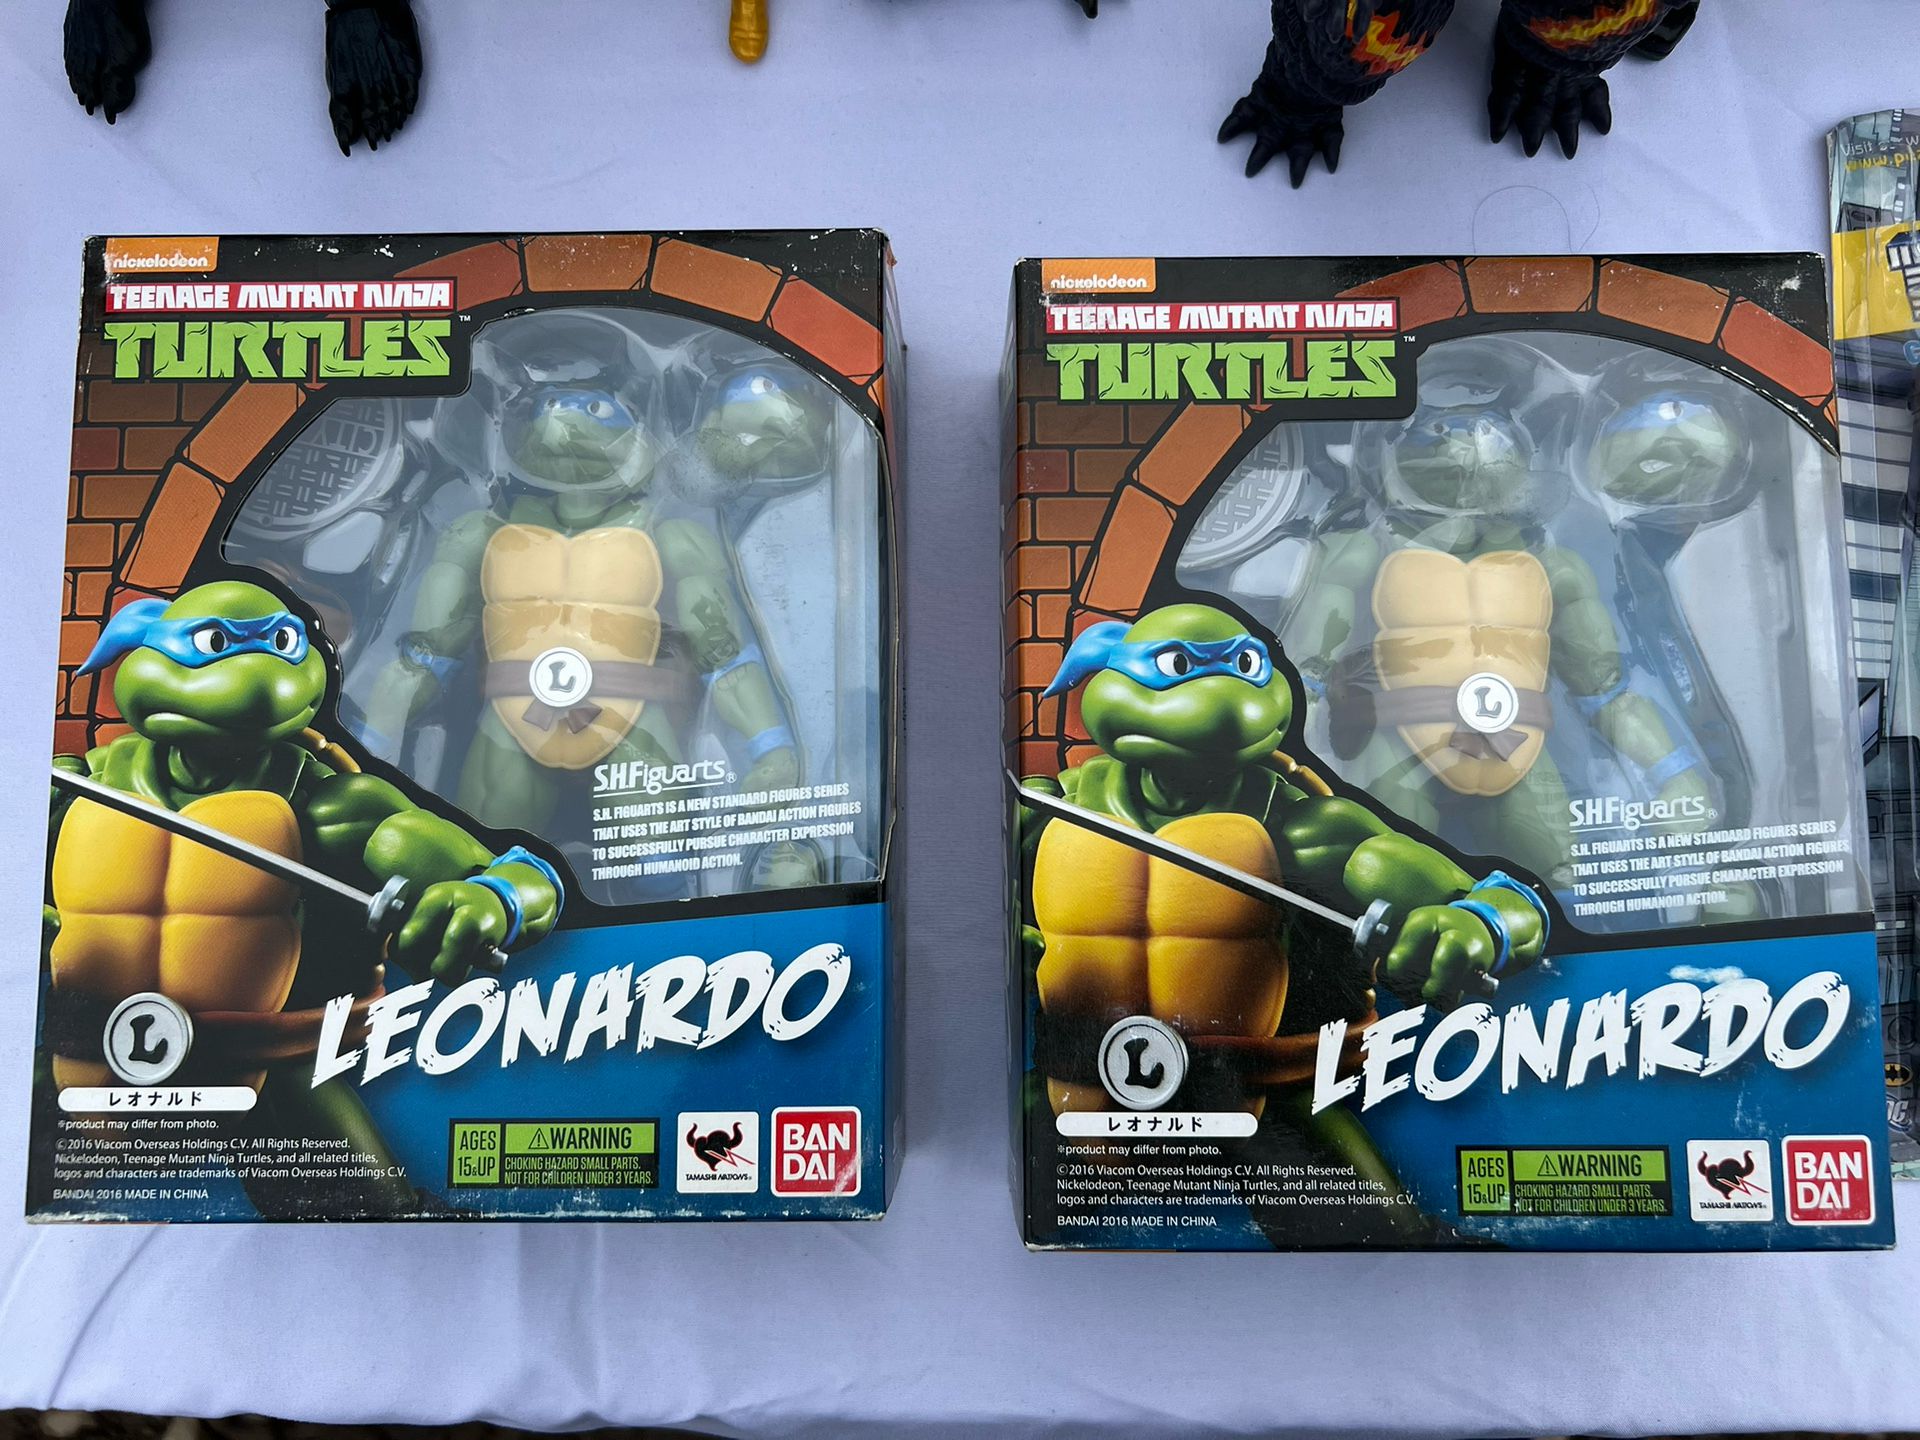 Bandai S.H. Figuarts Teenage Mutant Ninja Turtles - Leonardo Action Figure $ 60 Each 